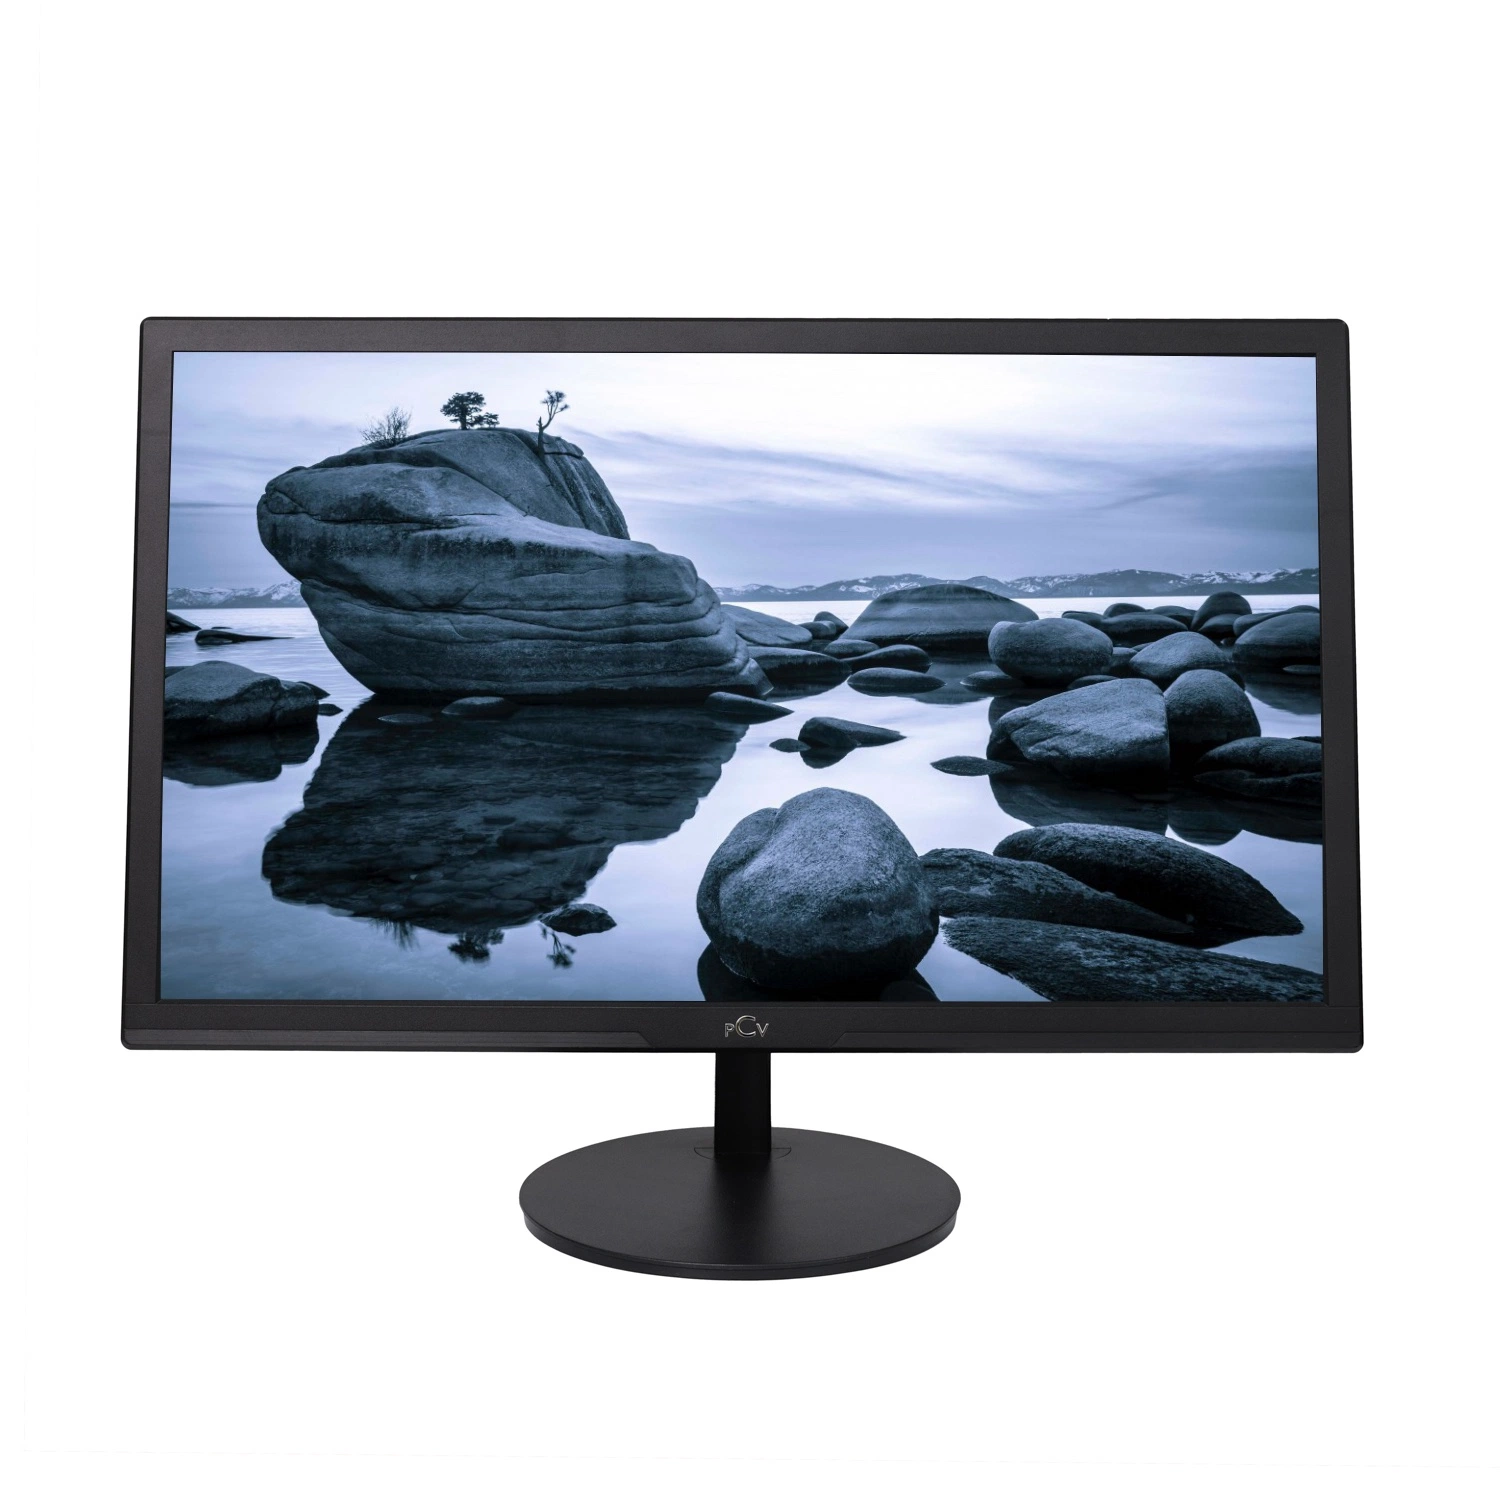 Preço por grosso 17 18.5 19 22 23 LCD LED de 24 polegadas Monitor de computador monitor CCTV computador portátil de PC com VGA HDMI para escritório doméstico